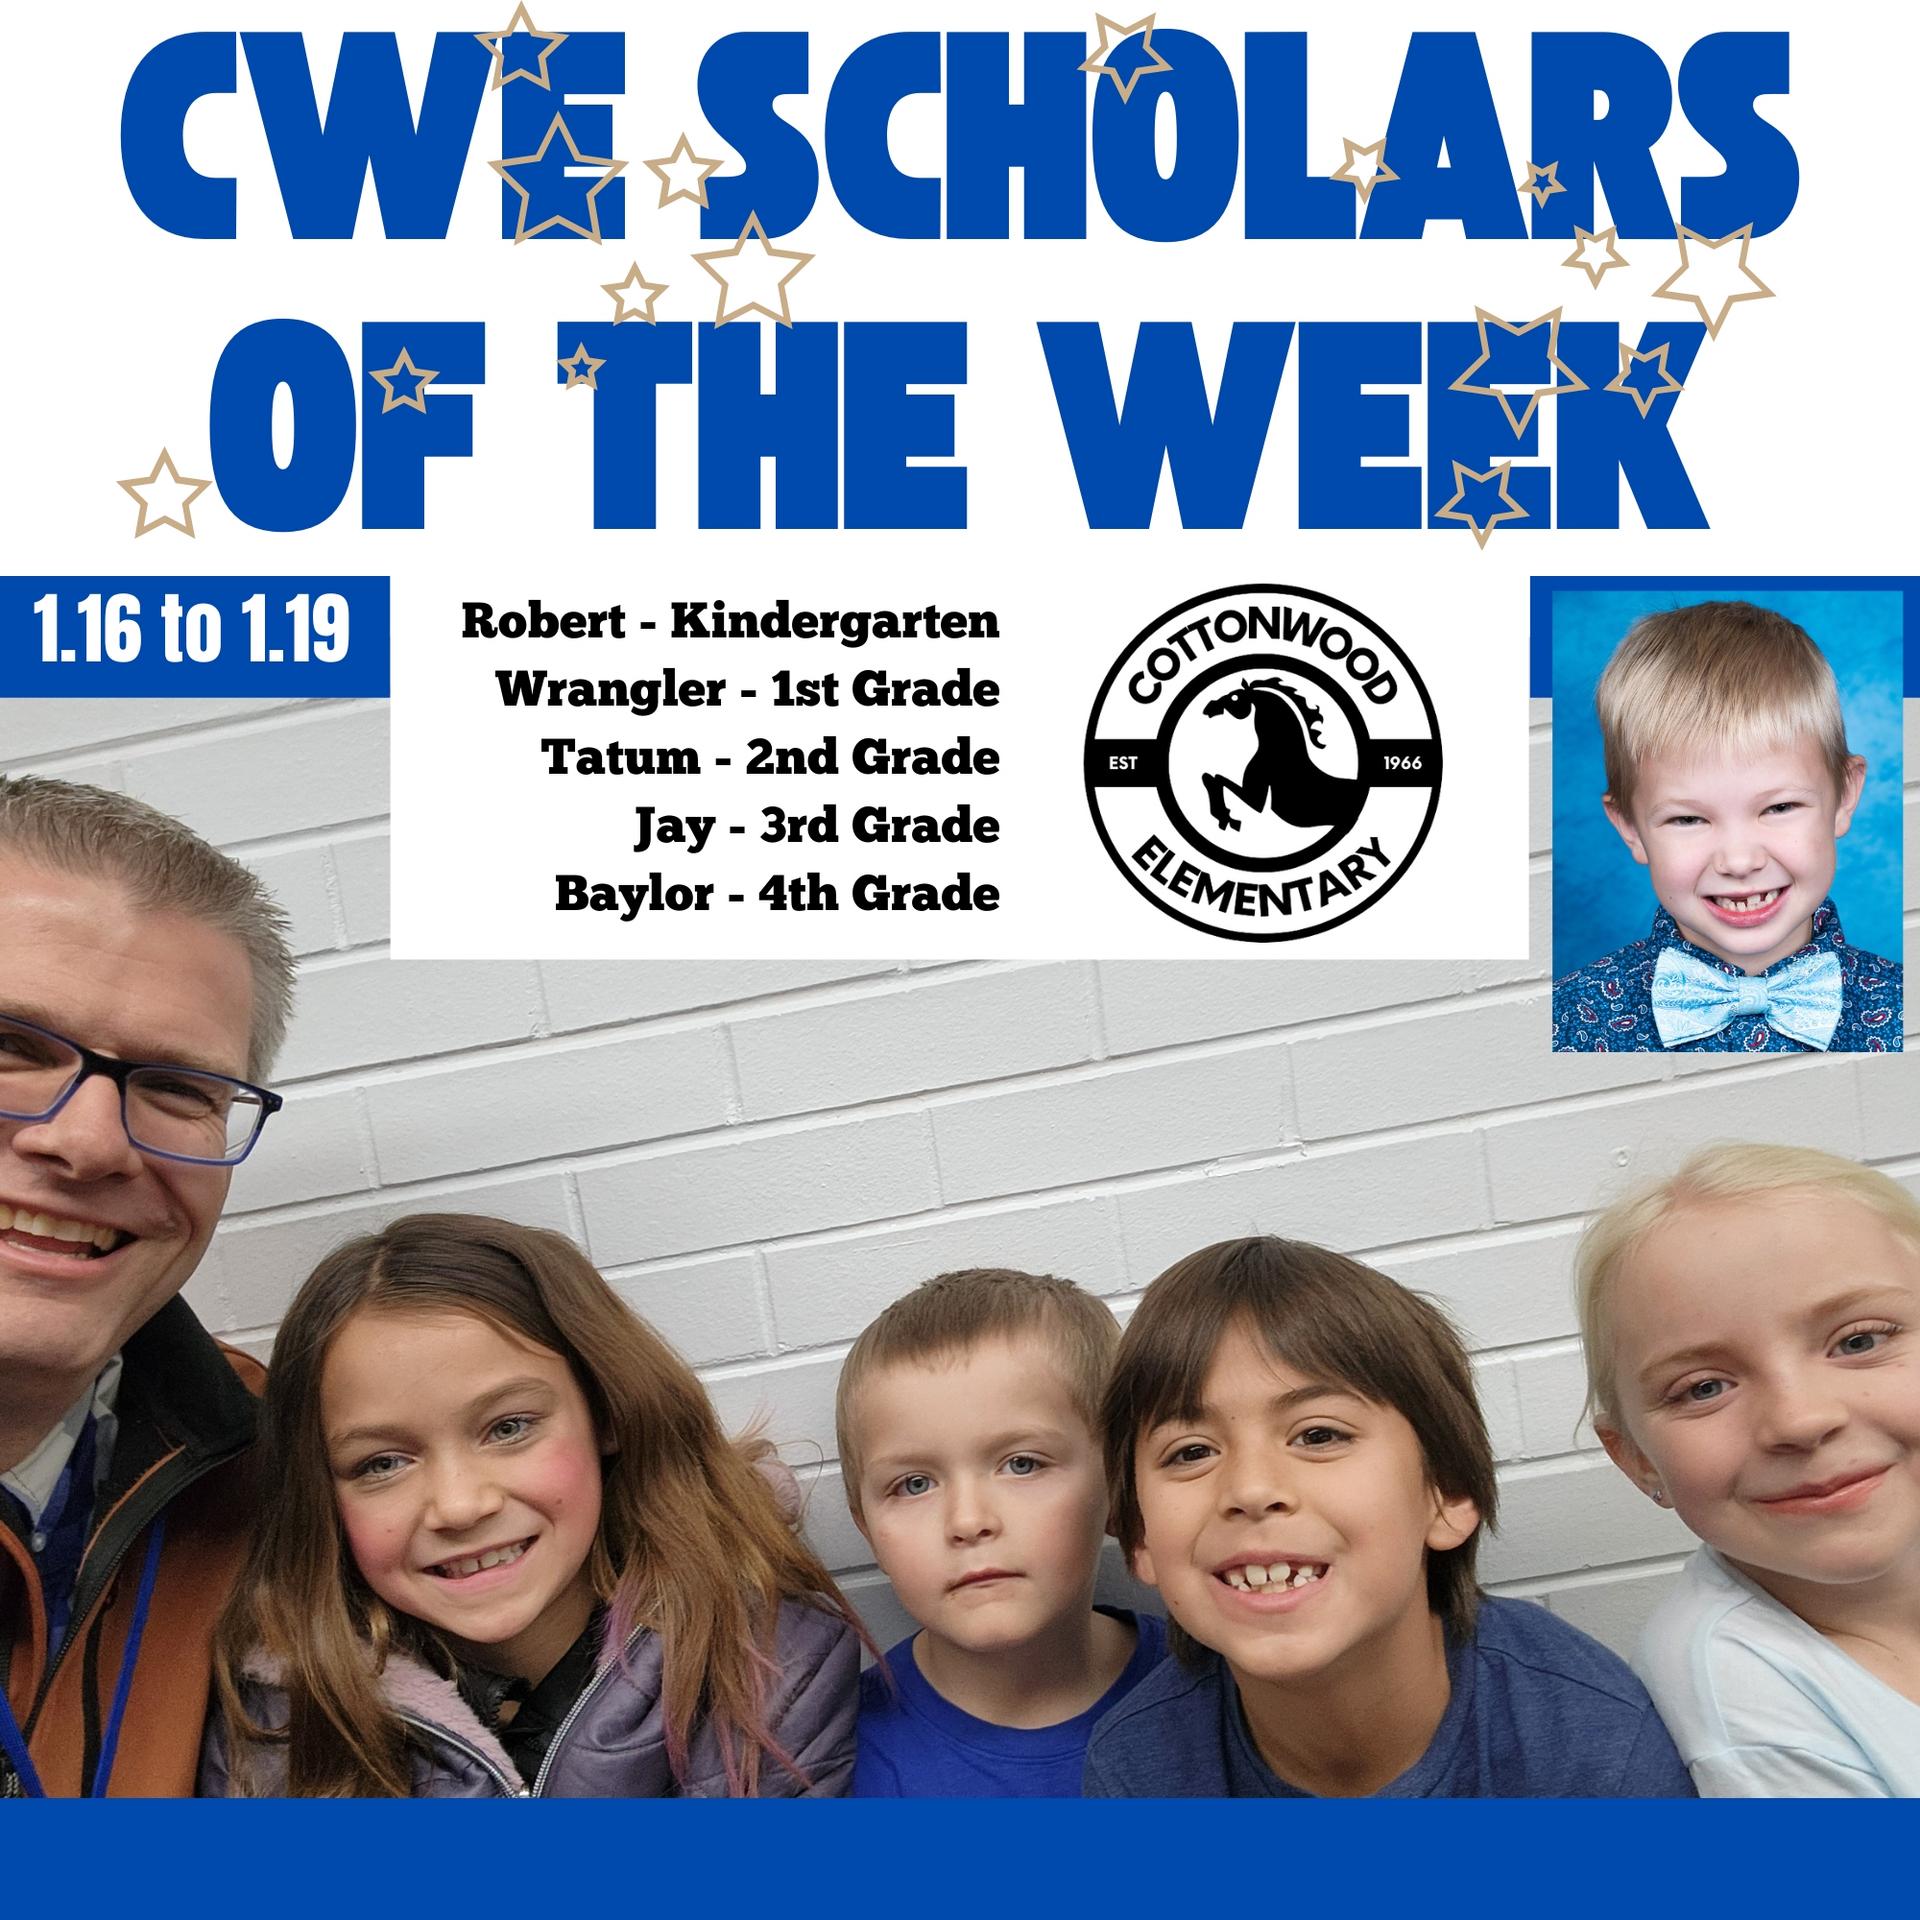 CWE-Scholars-of-the-Week-1.16-to-1.19.jpg